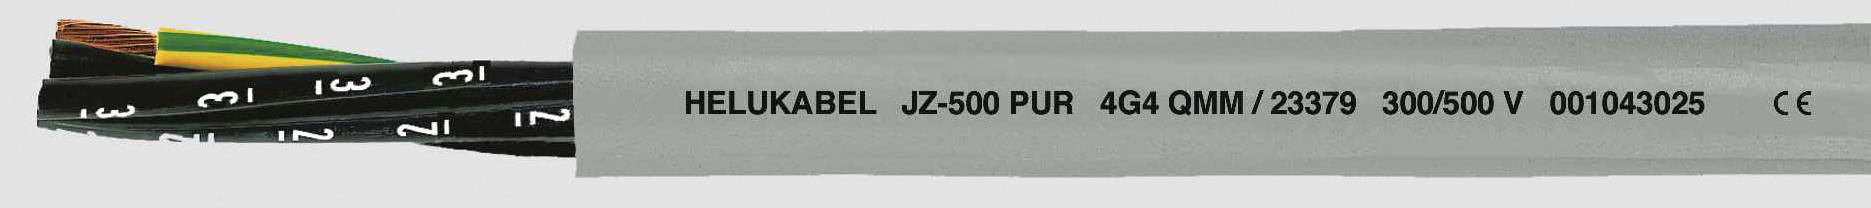 HELUKABEL JZ-500 PUR Steuerleitung 5 G 0.50 mm² Grau 23319-500 500 m